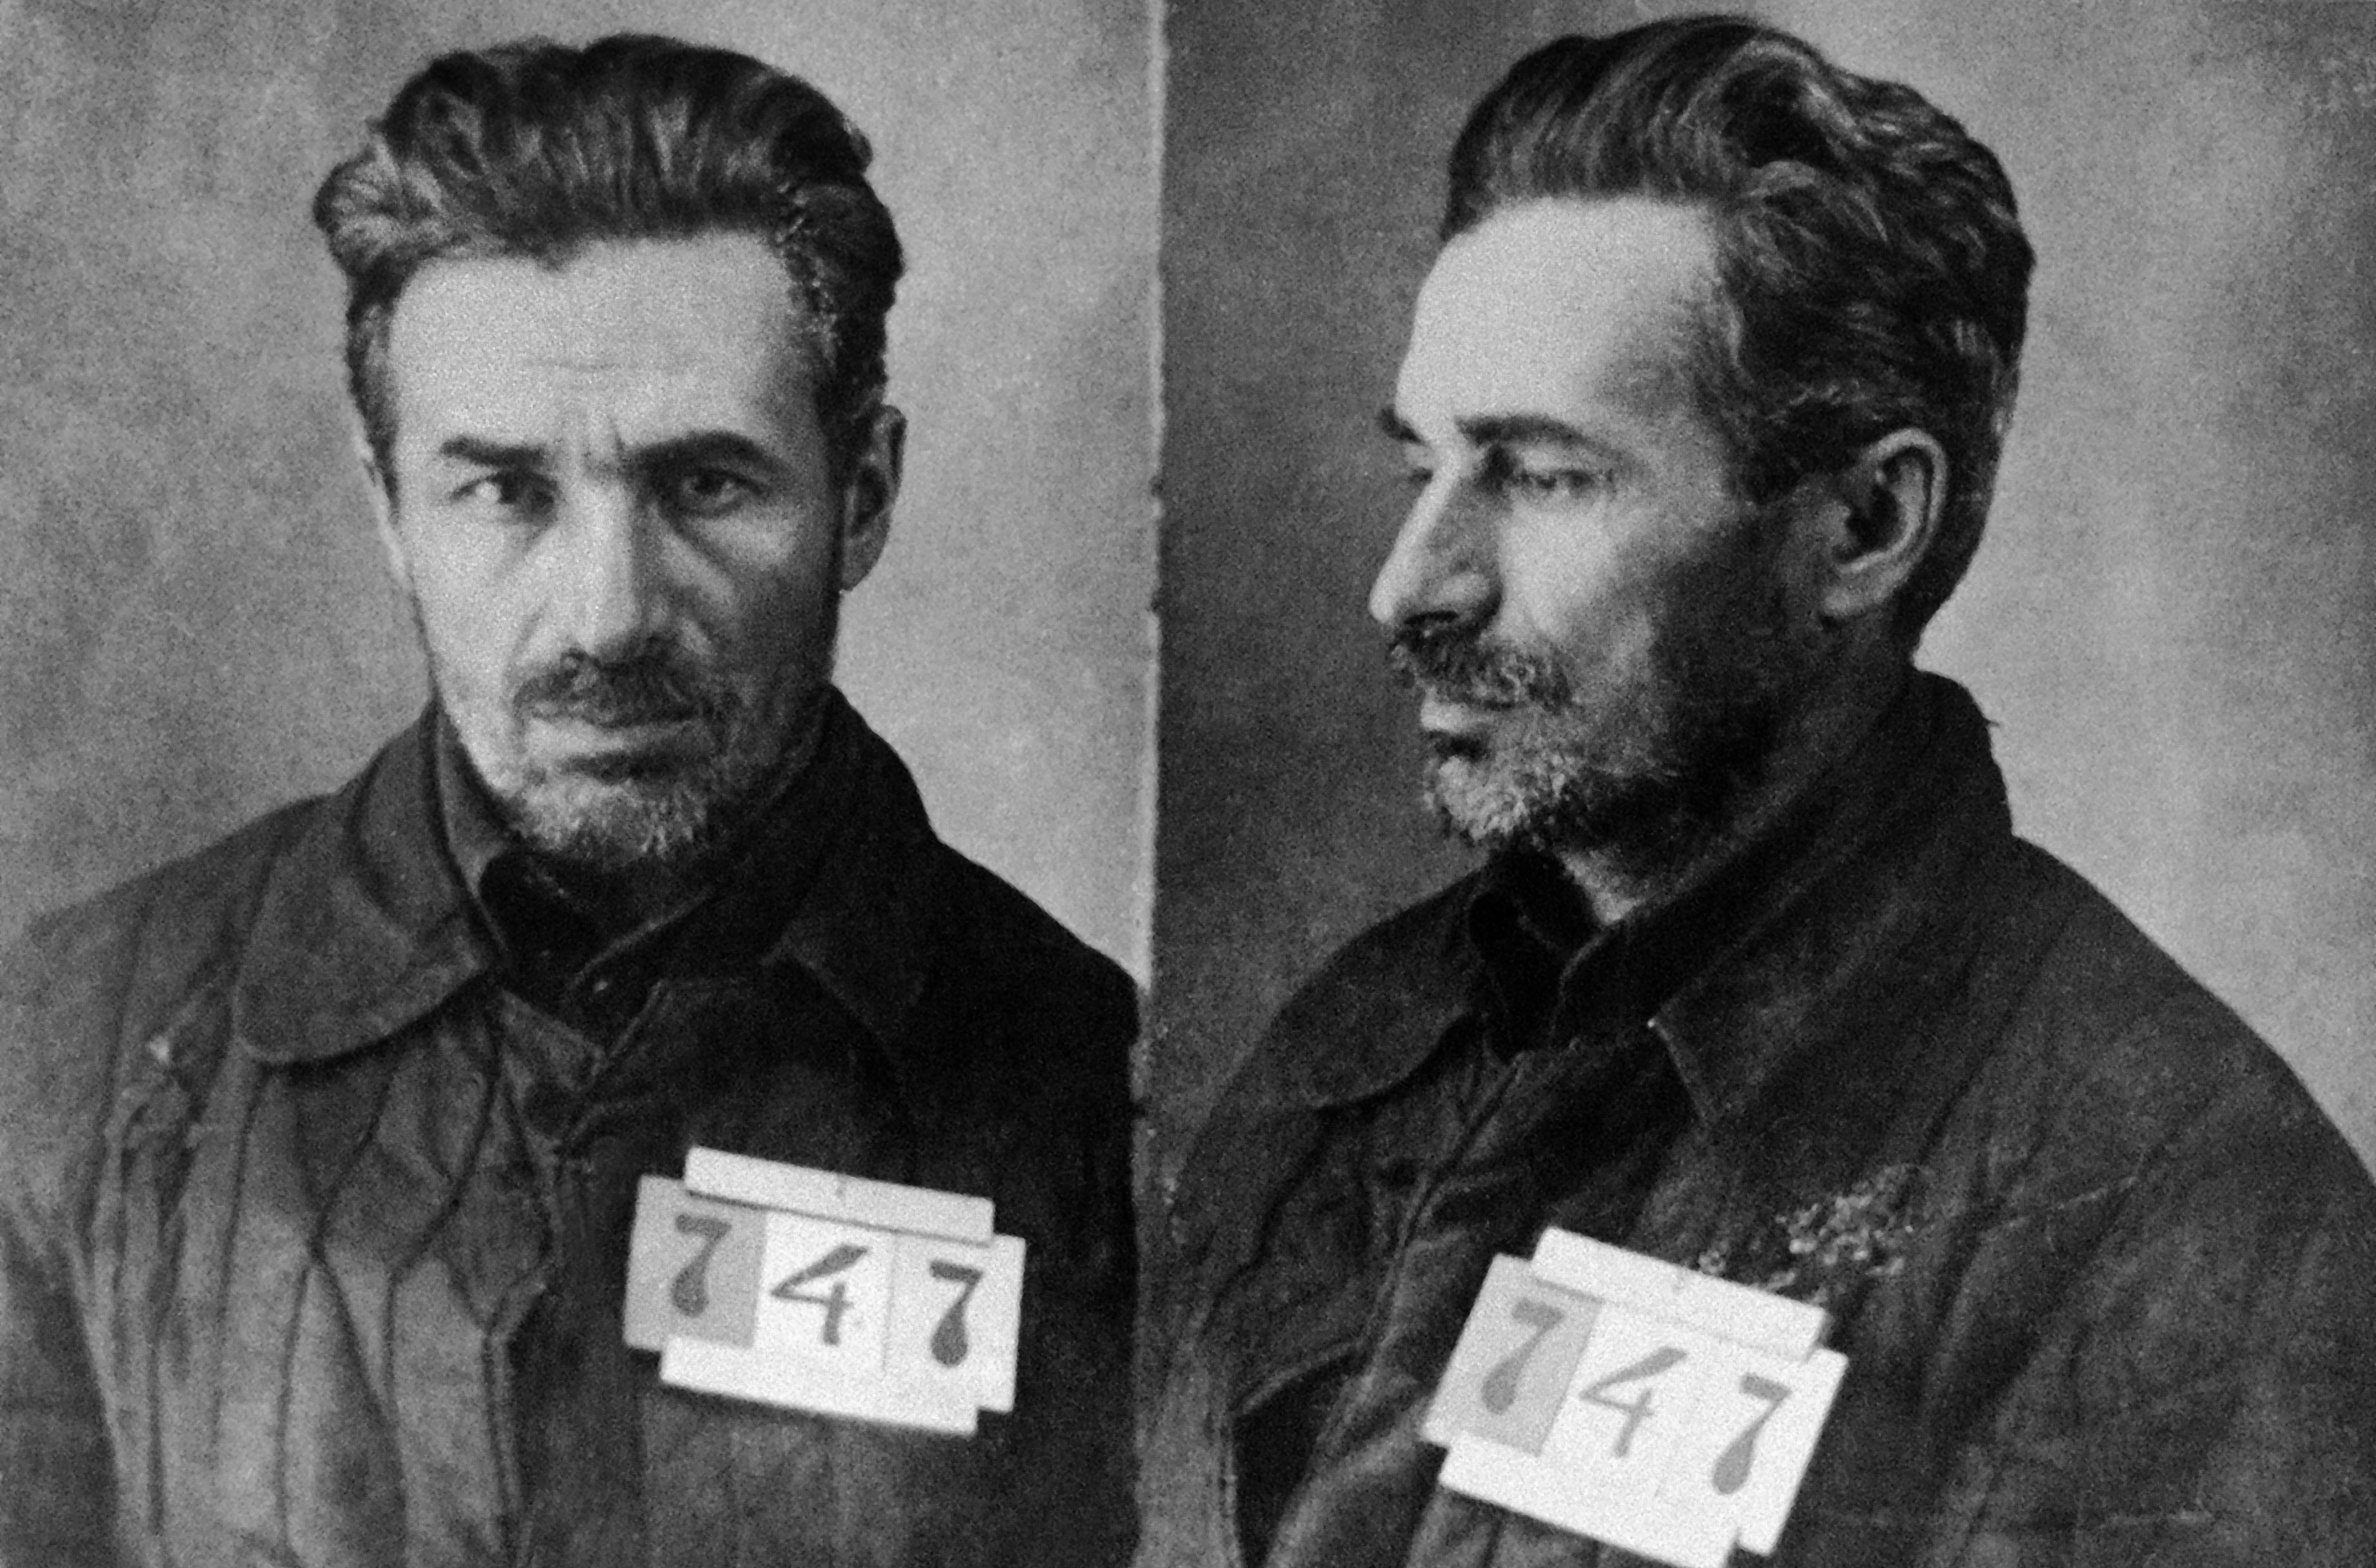 Gulag, sovětská historie